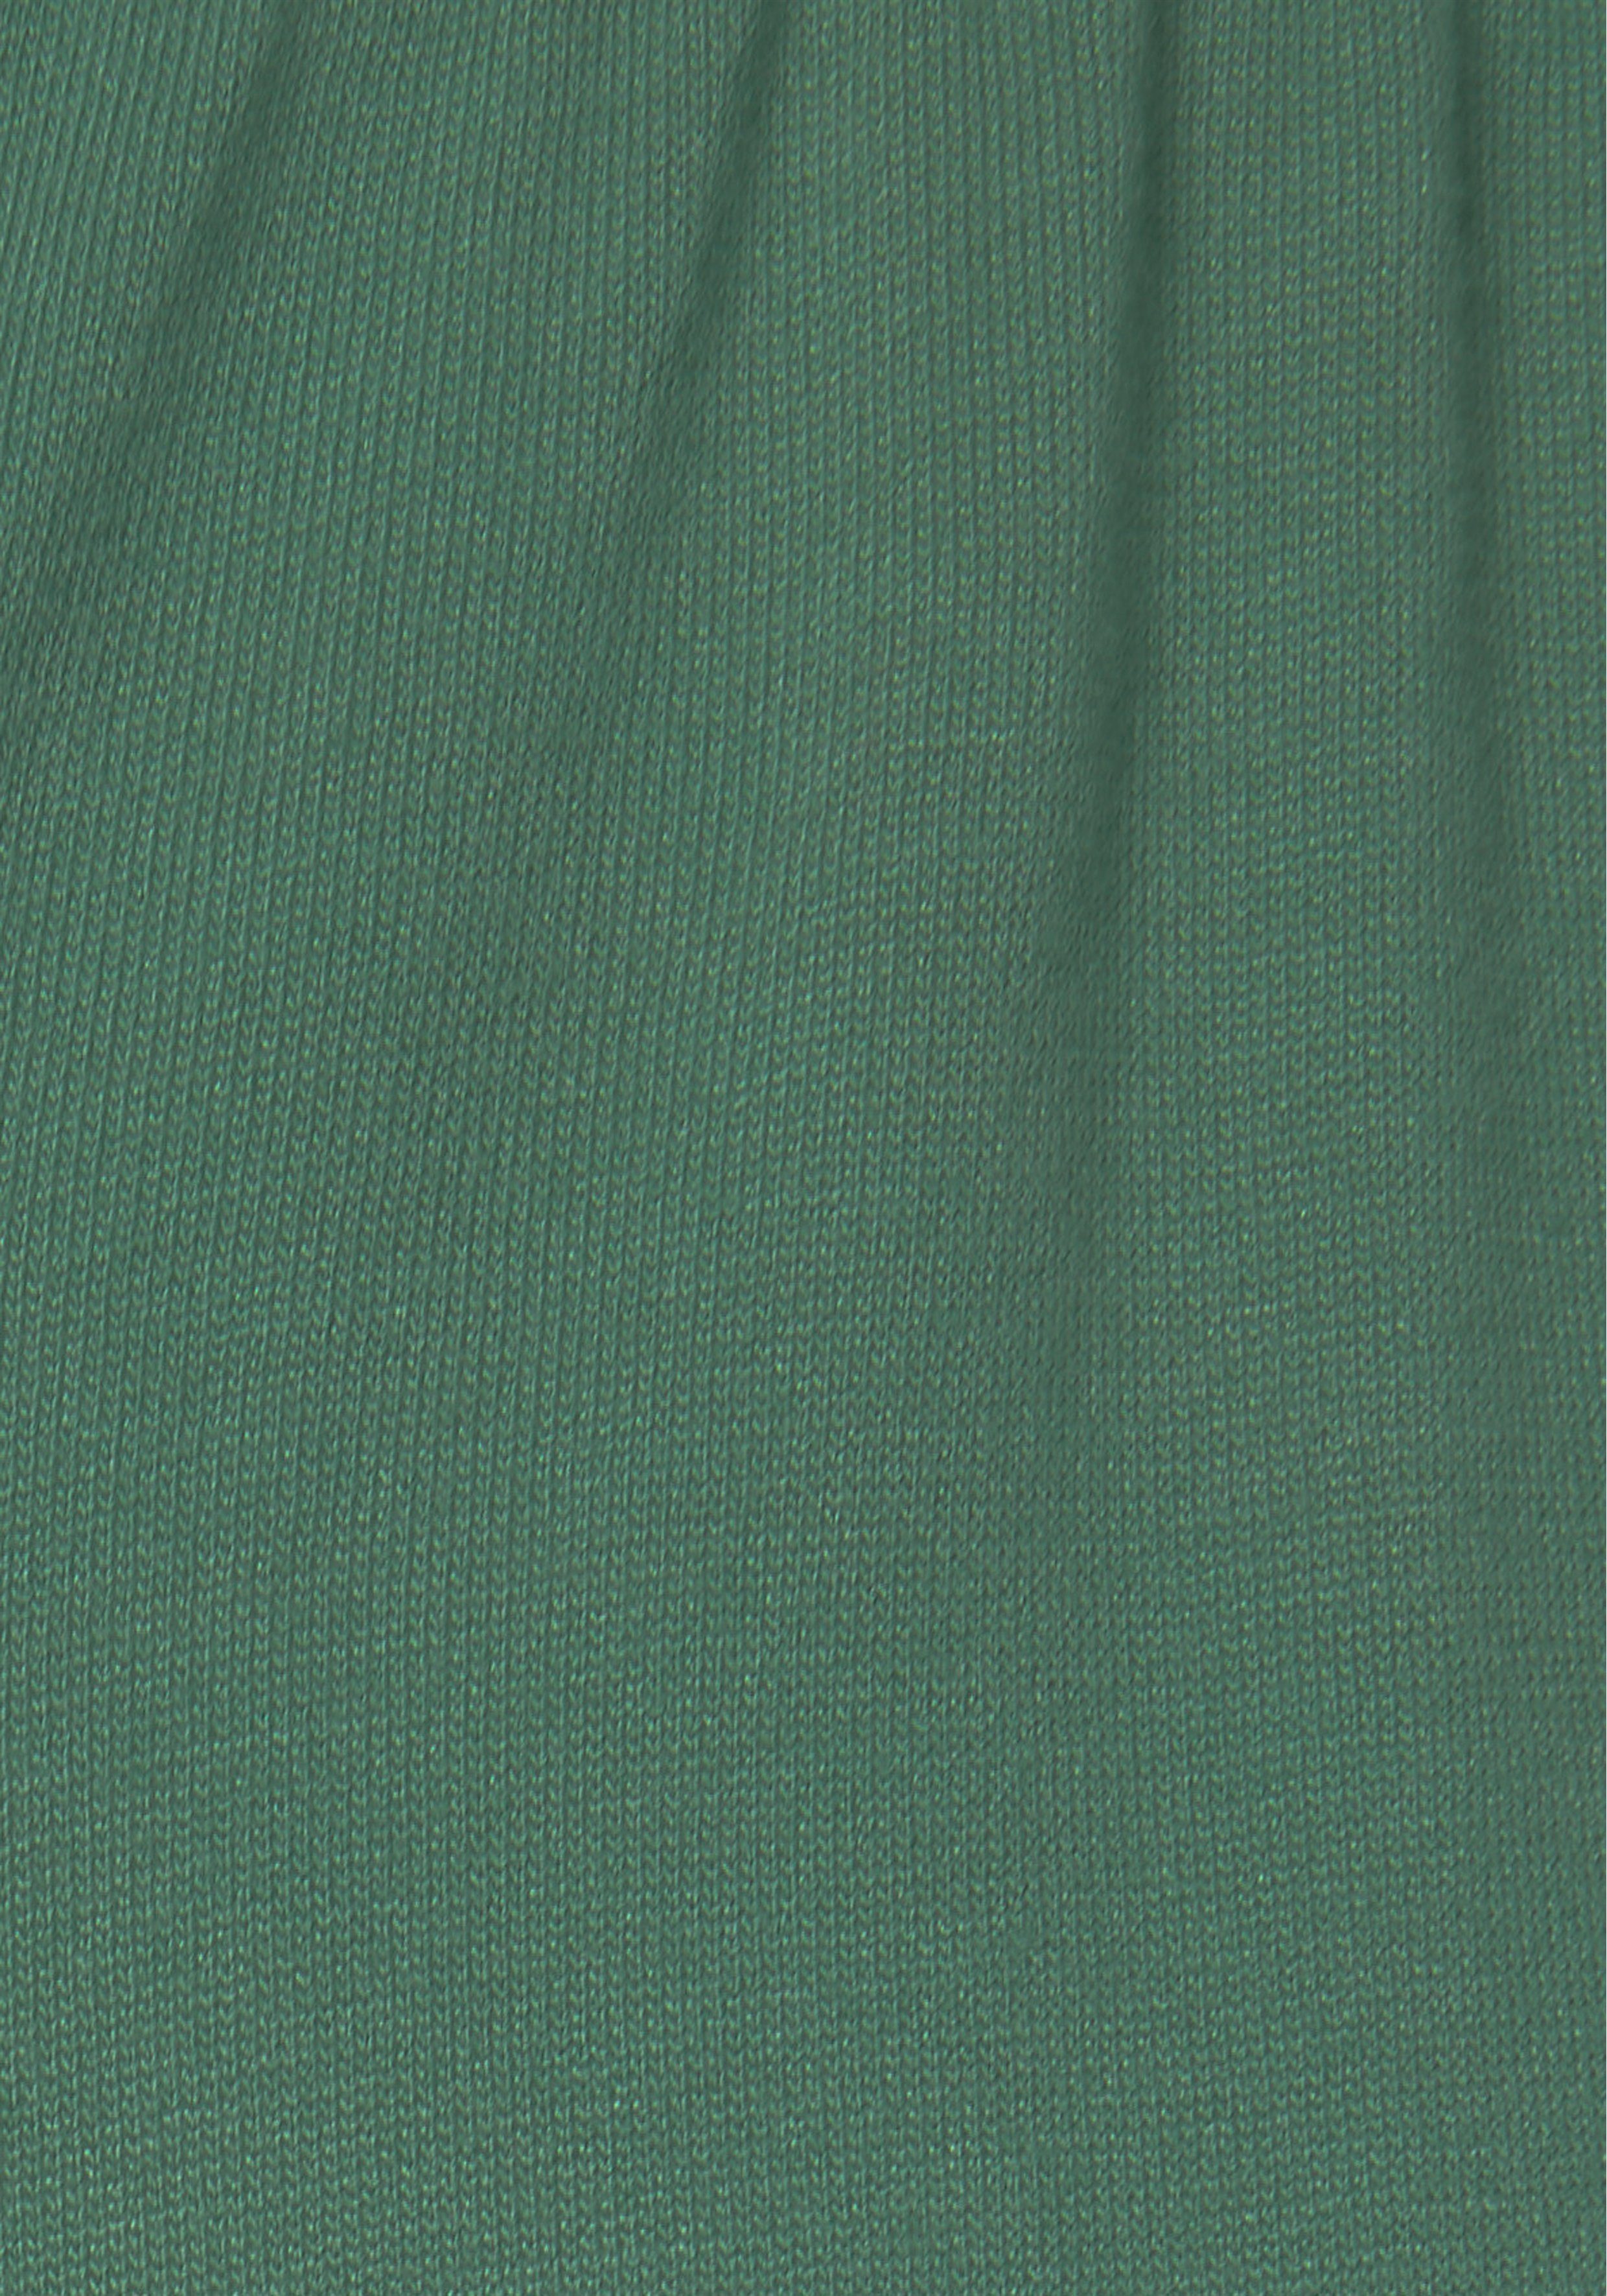 Jerseykleid Beachtime dunkelgrün